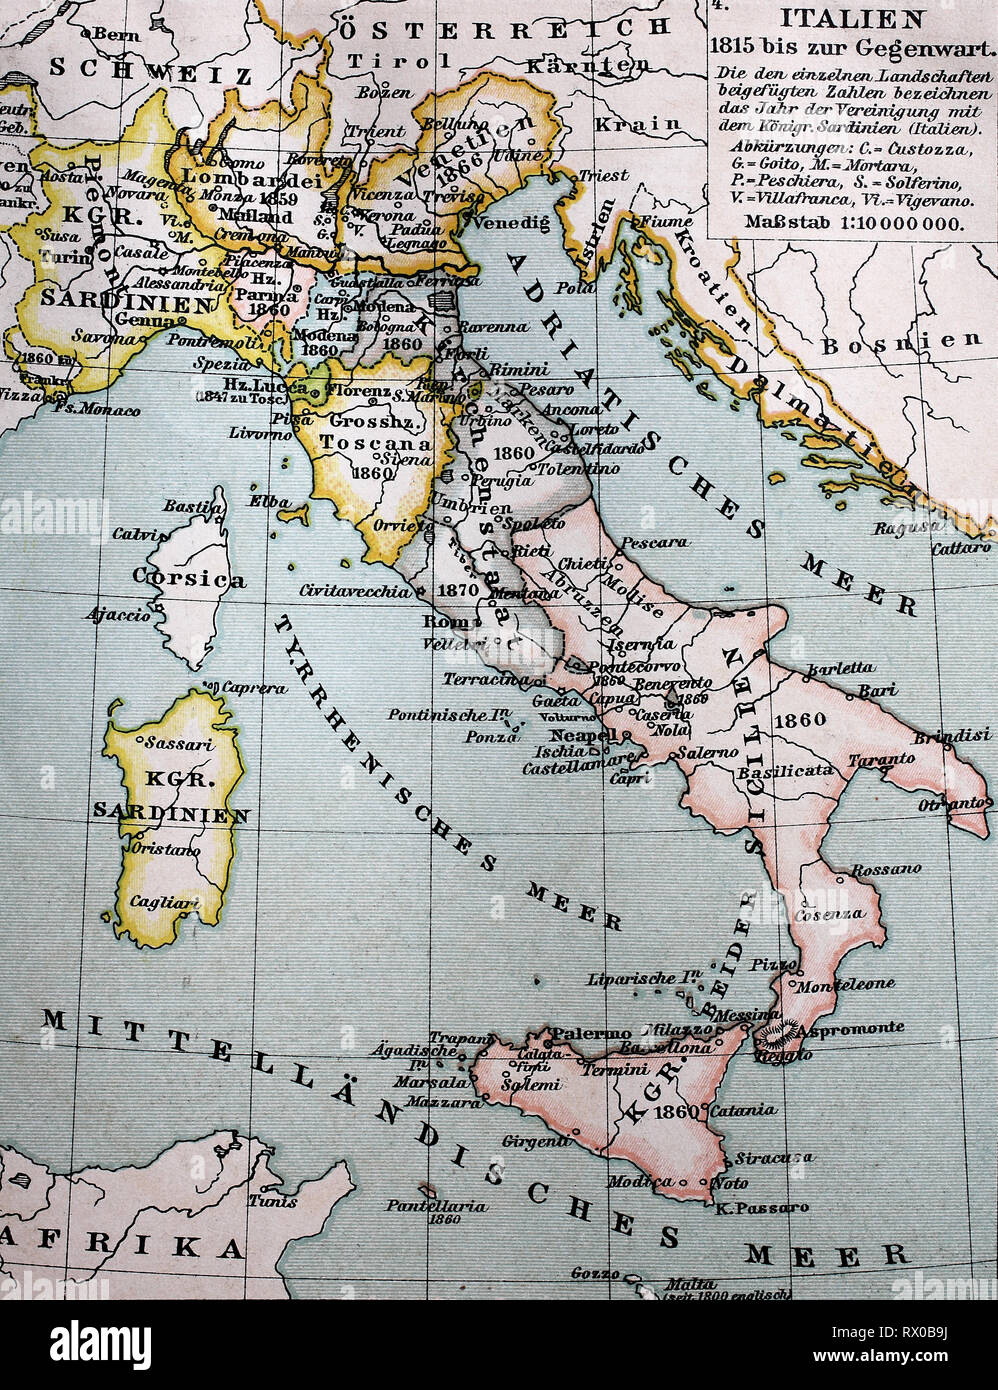 Landkarte von Italien zwischen 1815 bis 1885 / Map of Italy between 1815 and 1885 Stock Photo